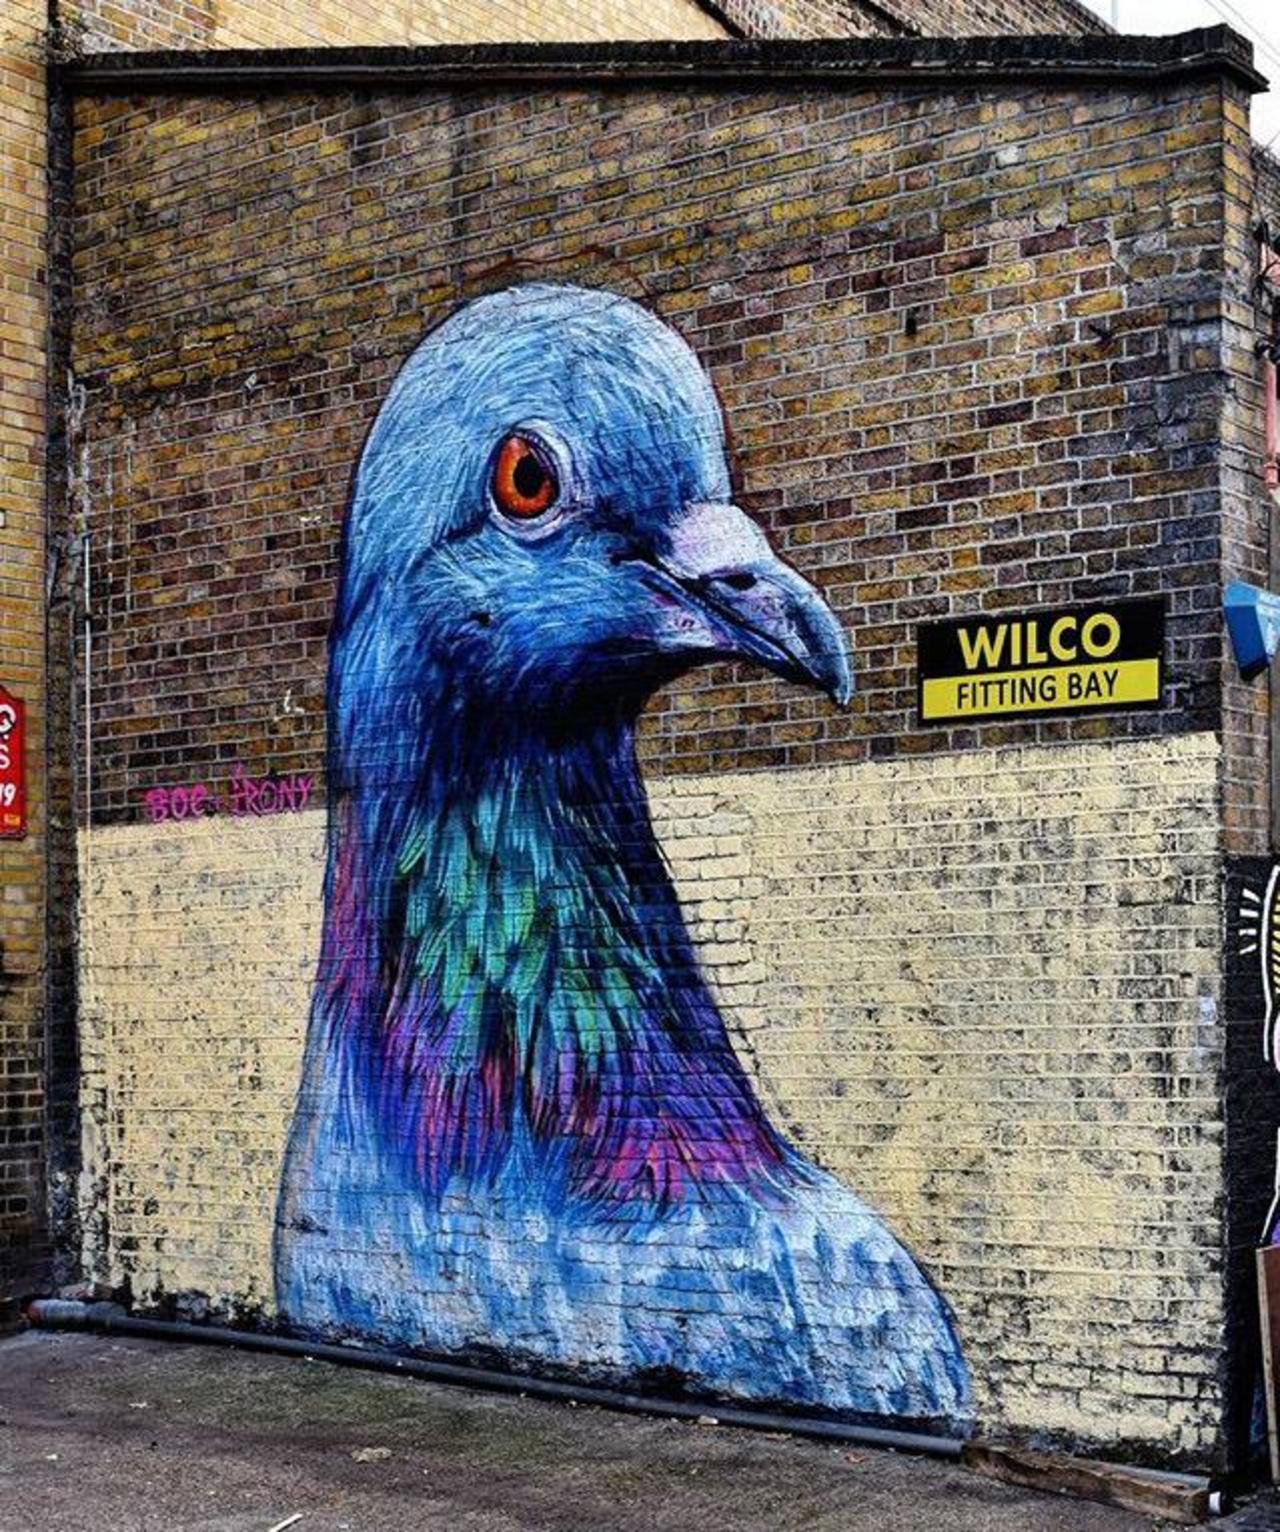 Street Art by Placee Boe & whoamirony in London 

#art #graffiti #mural #streetart http://t.co/8o5gS15ZYd